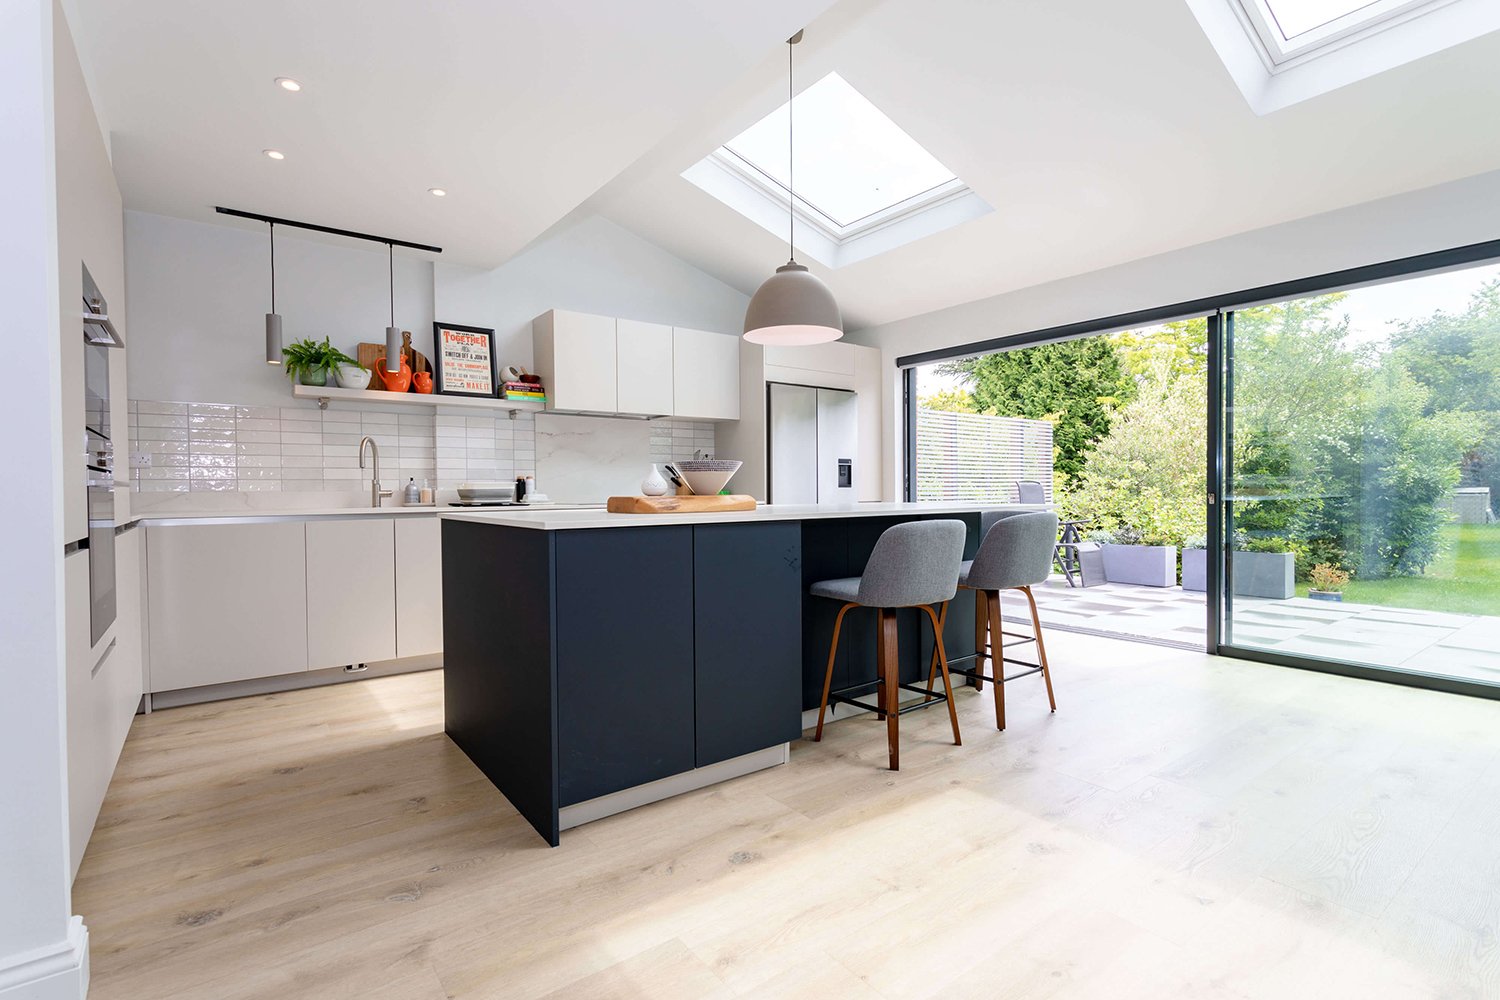 acr-build-kitchen-conversion-extension-harpenden-hertfordshire-skylight.jpg